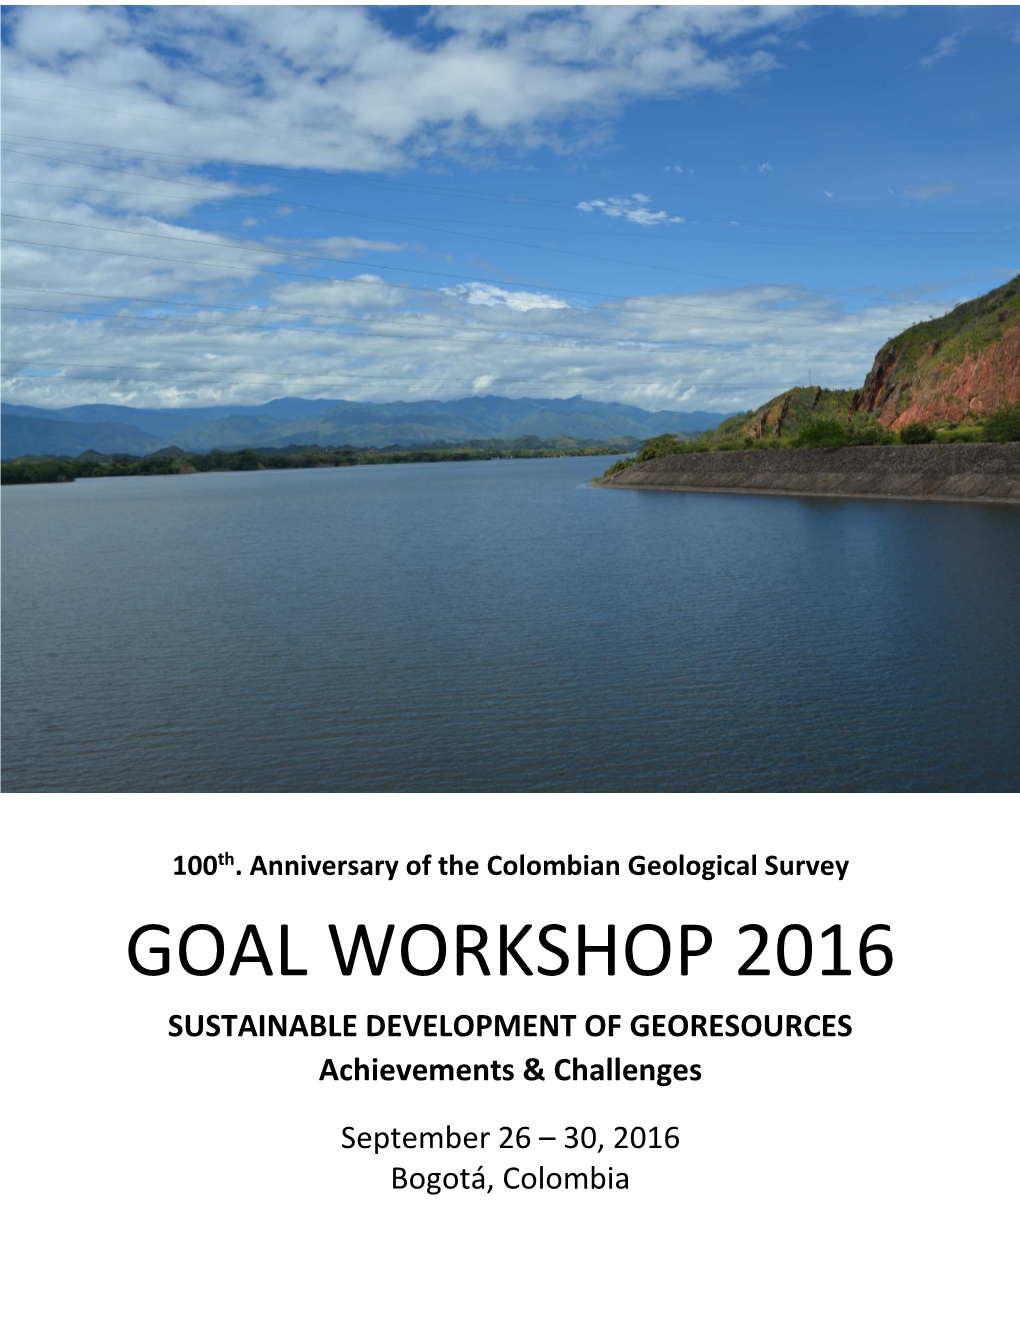 Goal Workshop 2016